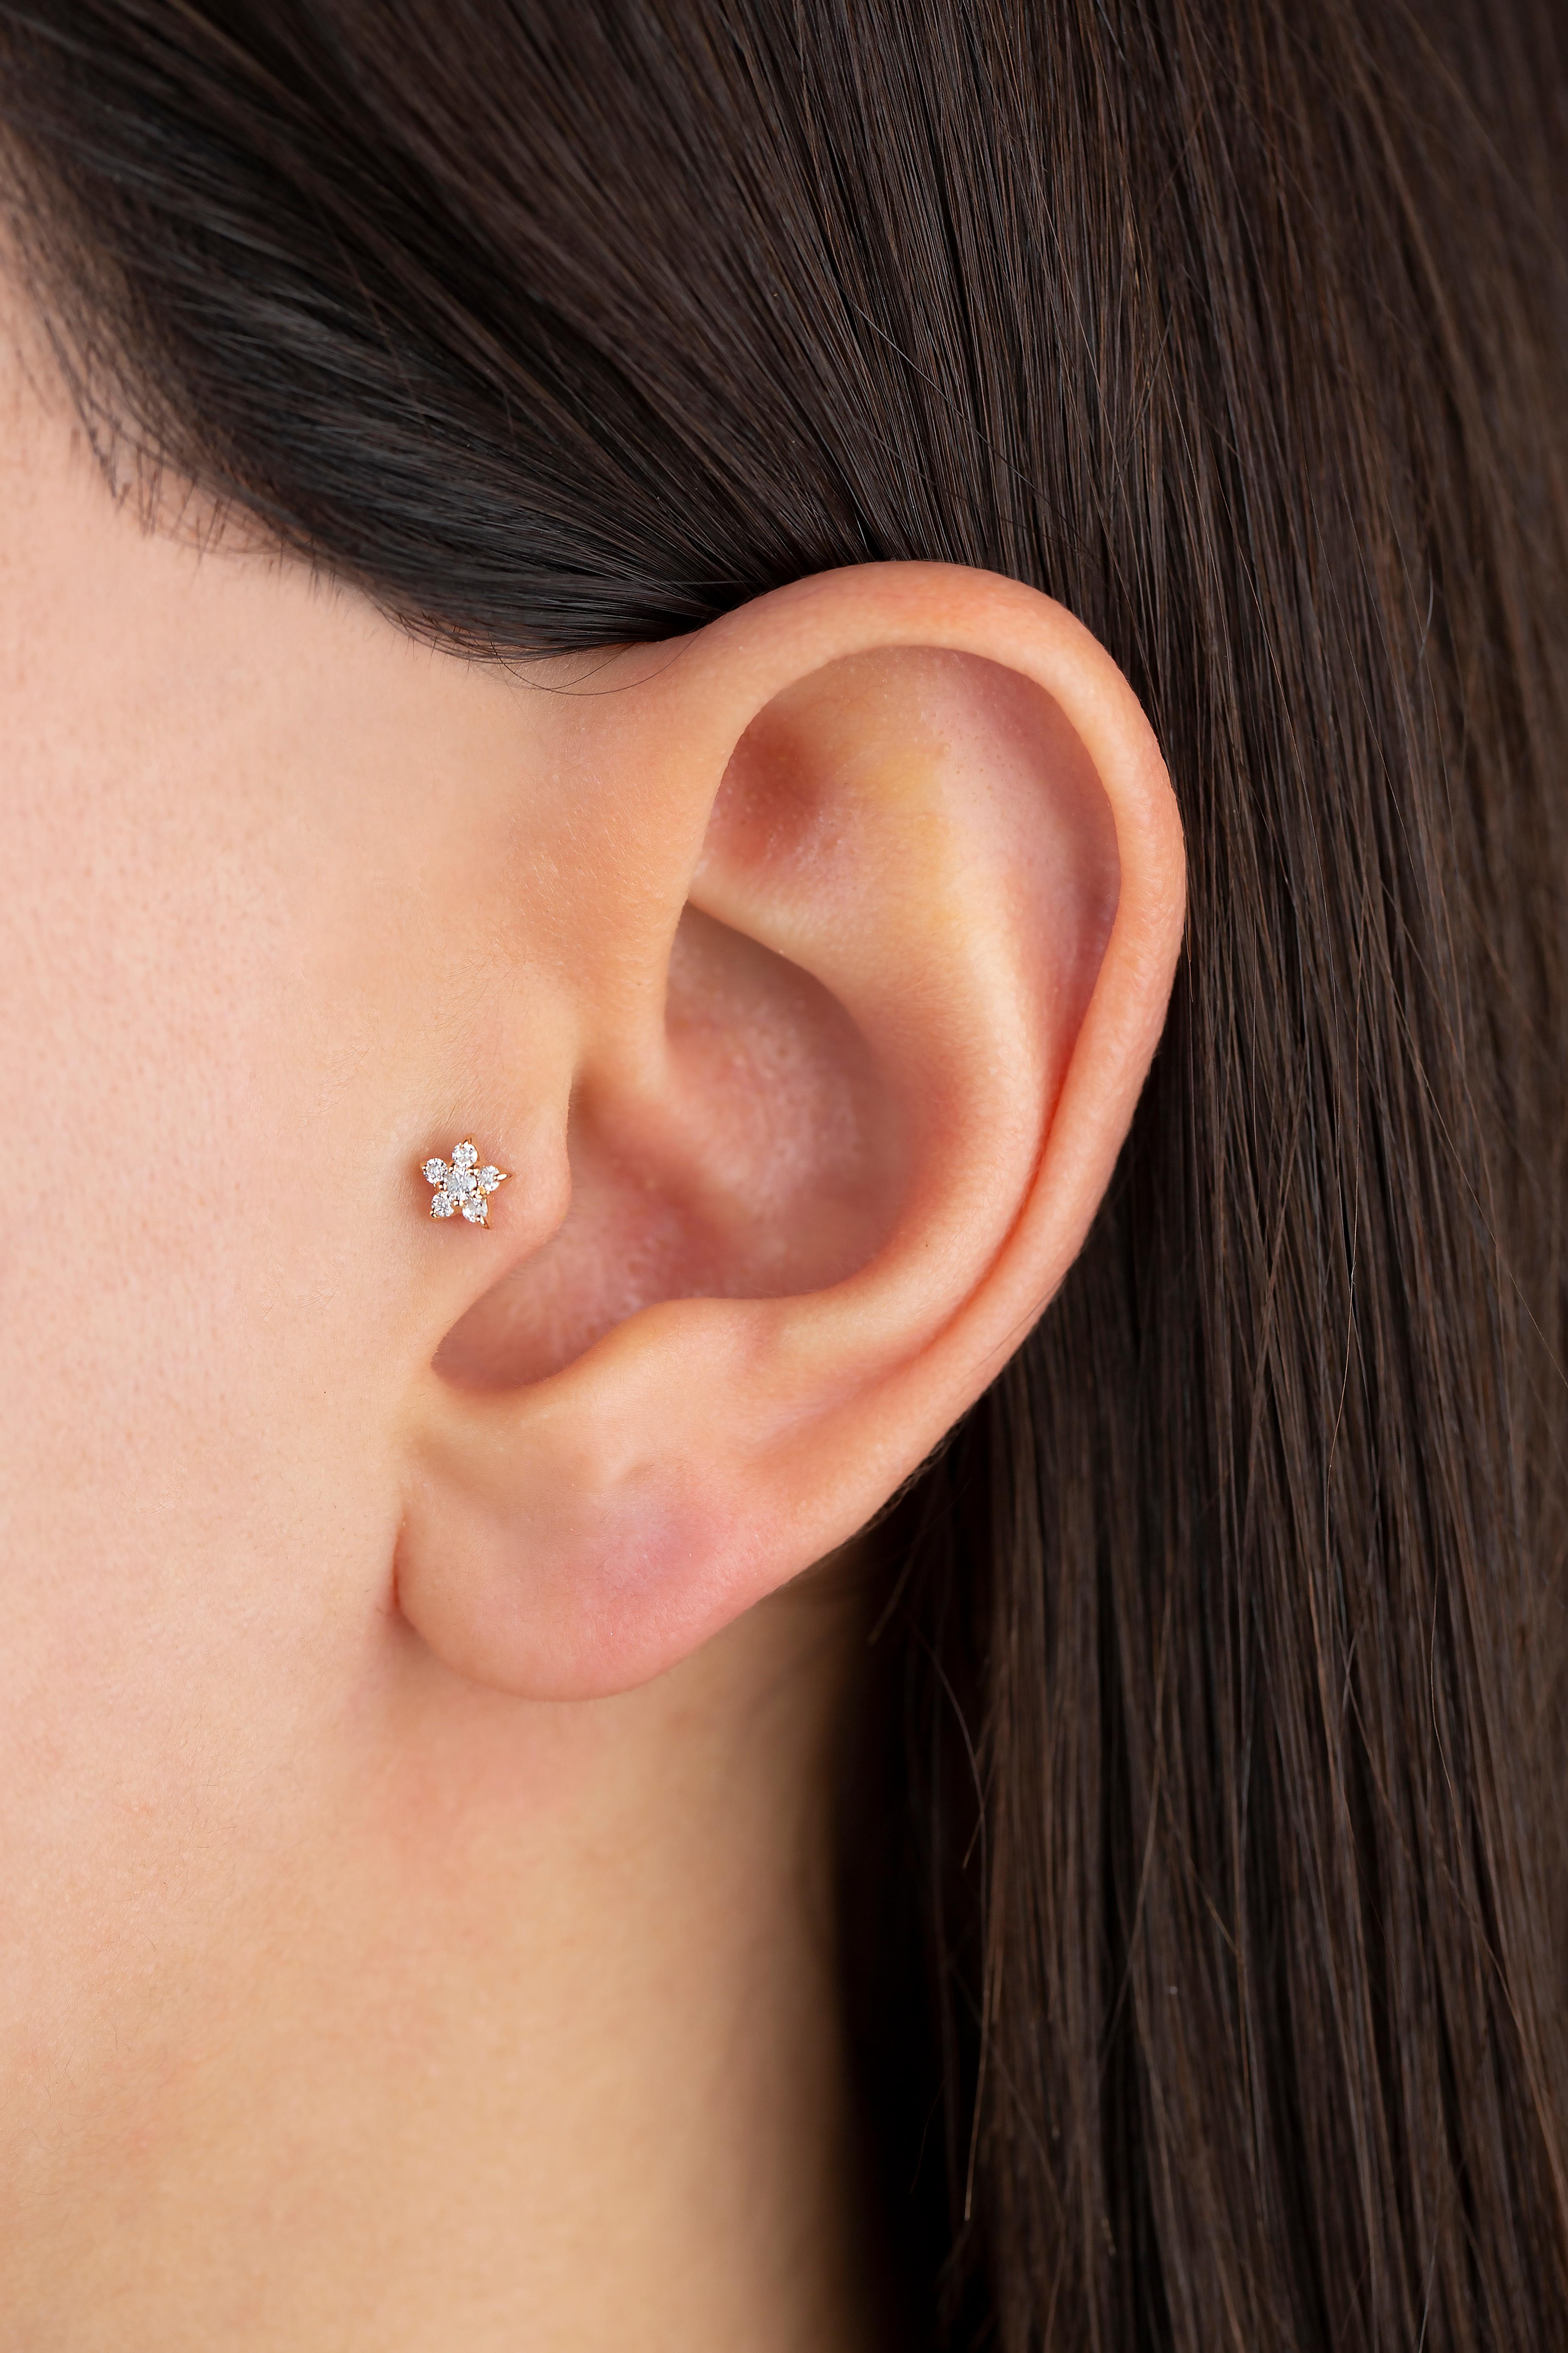 14K Gold 0.05 Ct Diamant Stern Piercing, Gold Diamant Stern Ohrring

Sie können das Piercing auch als Ohrring verwenden! Auch dieses Piercing ist geeignet für Tragus, Nase, Helix, Lappen, flach, Medusa, Monreo, Labret und Stud.

Dieses Piercing